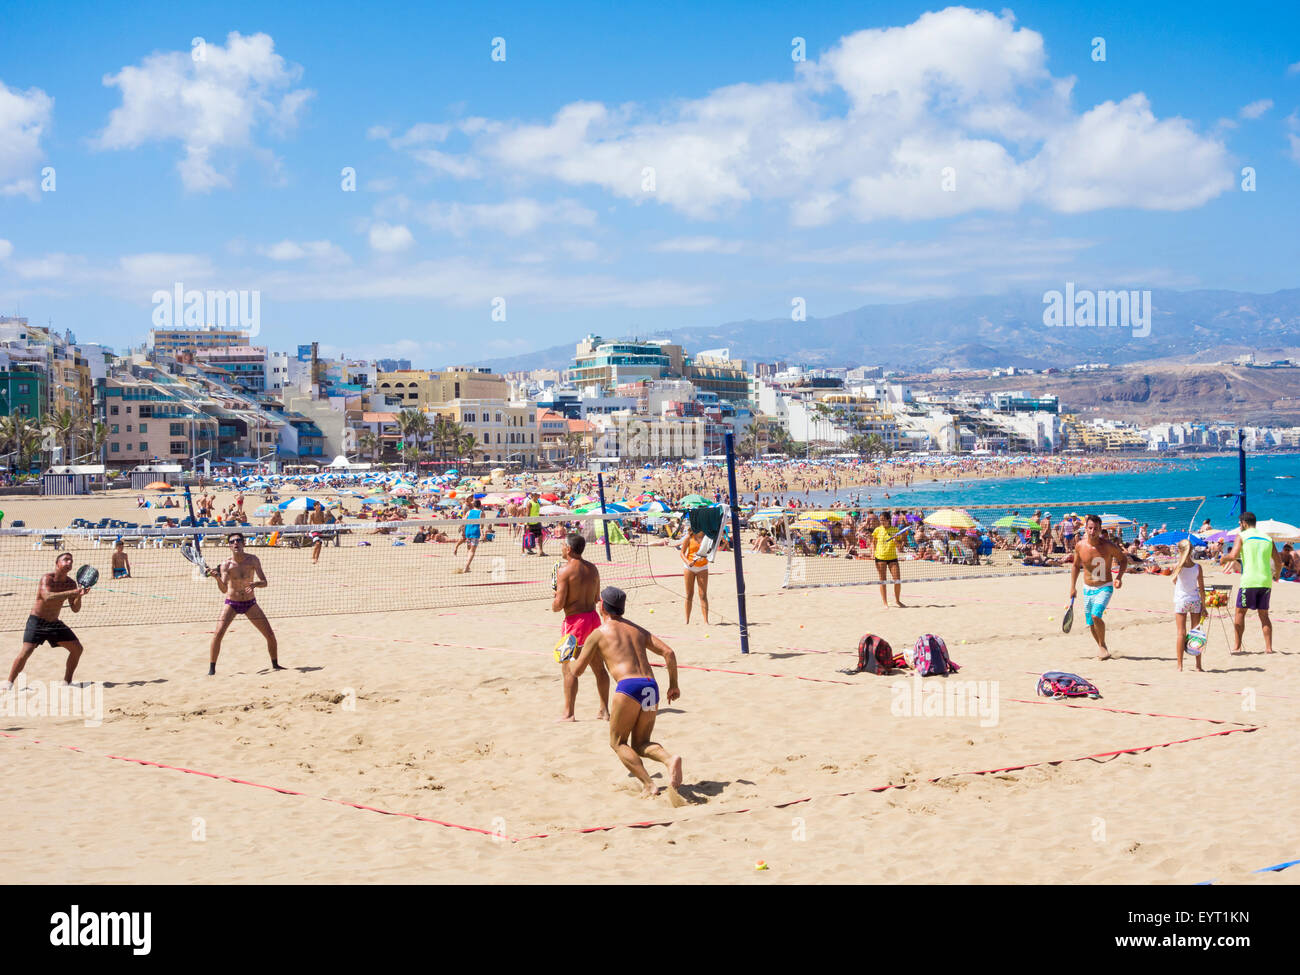 Tennis on Playa de Las Canteras beach, Las Palmas, Gran Canaria, Canary Islands, Spain Stock Photo